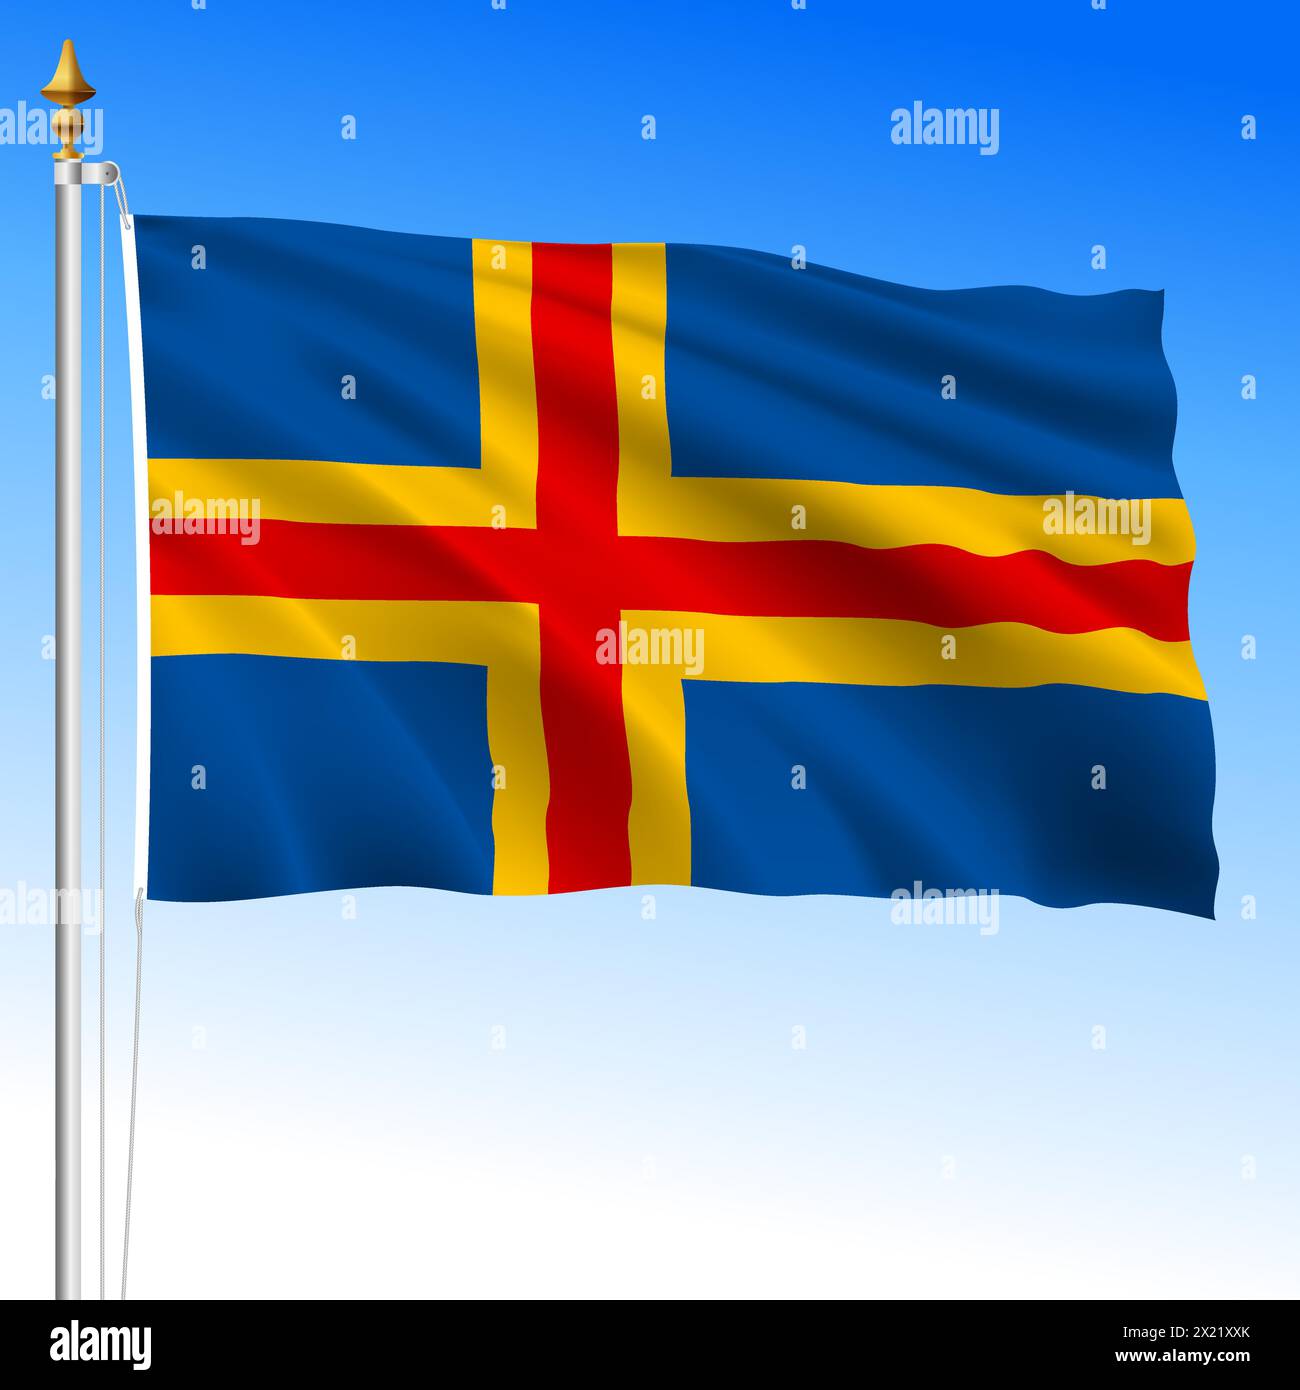 Bandiera ufficiale Aland, isole finlandesi, illustrazione vettoriale Illustrazione Vettoriale